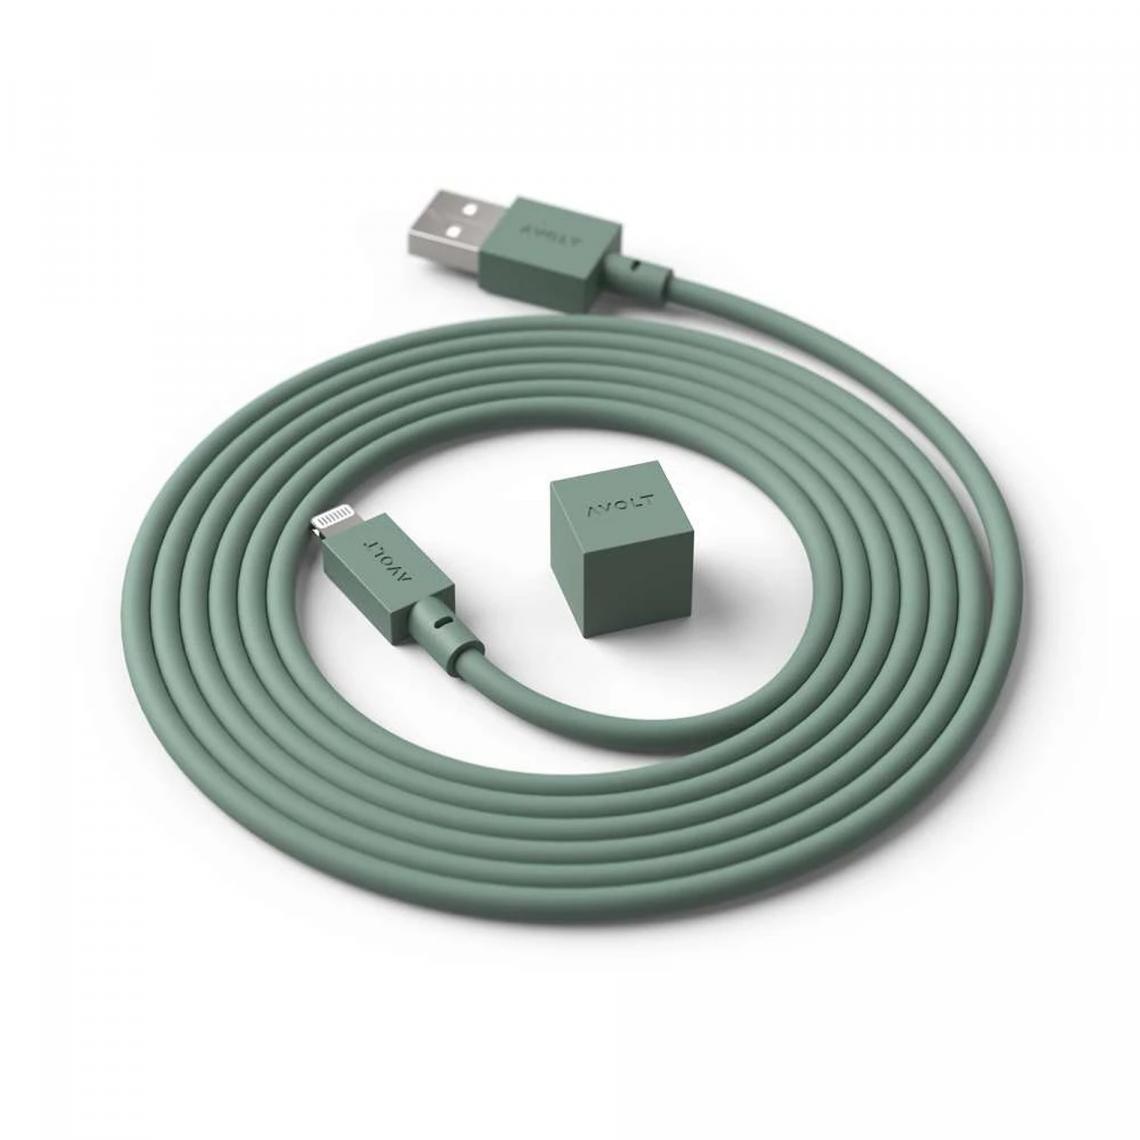 Pp No Name - Cable 1 Avolt USB A 1,8m Oak Green - Vert - Chargeur secteur téléphone